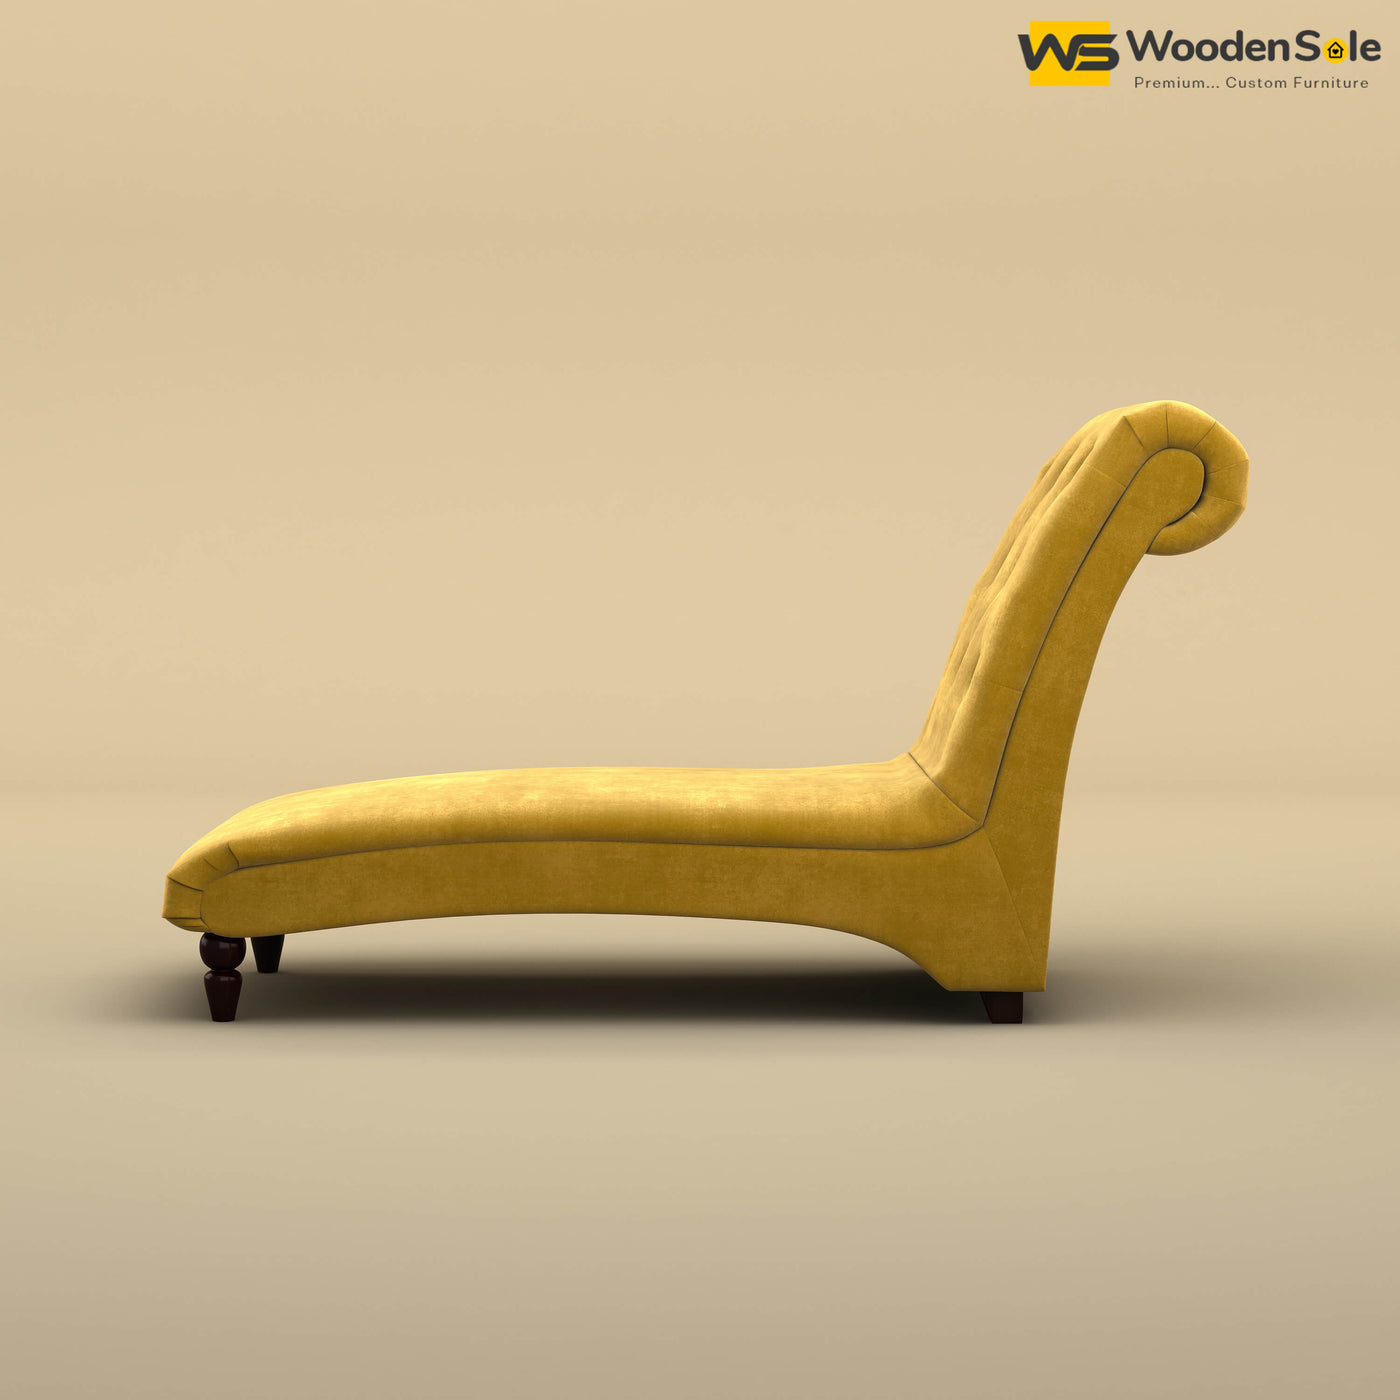 Turkish Chaise Lounge (Velvet, Mustard Yellow)